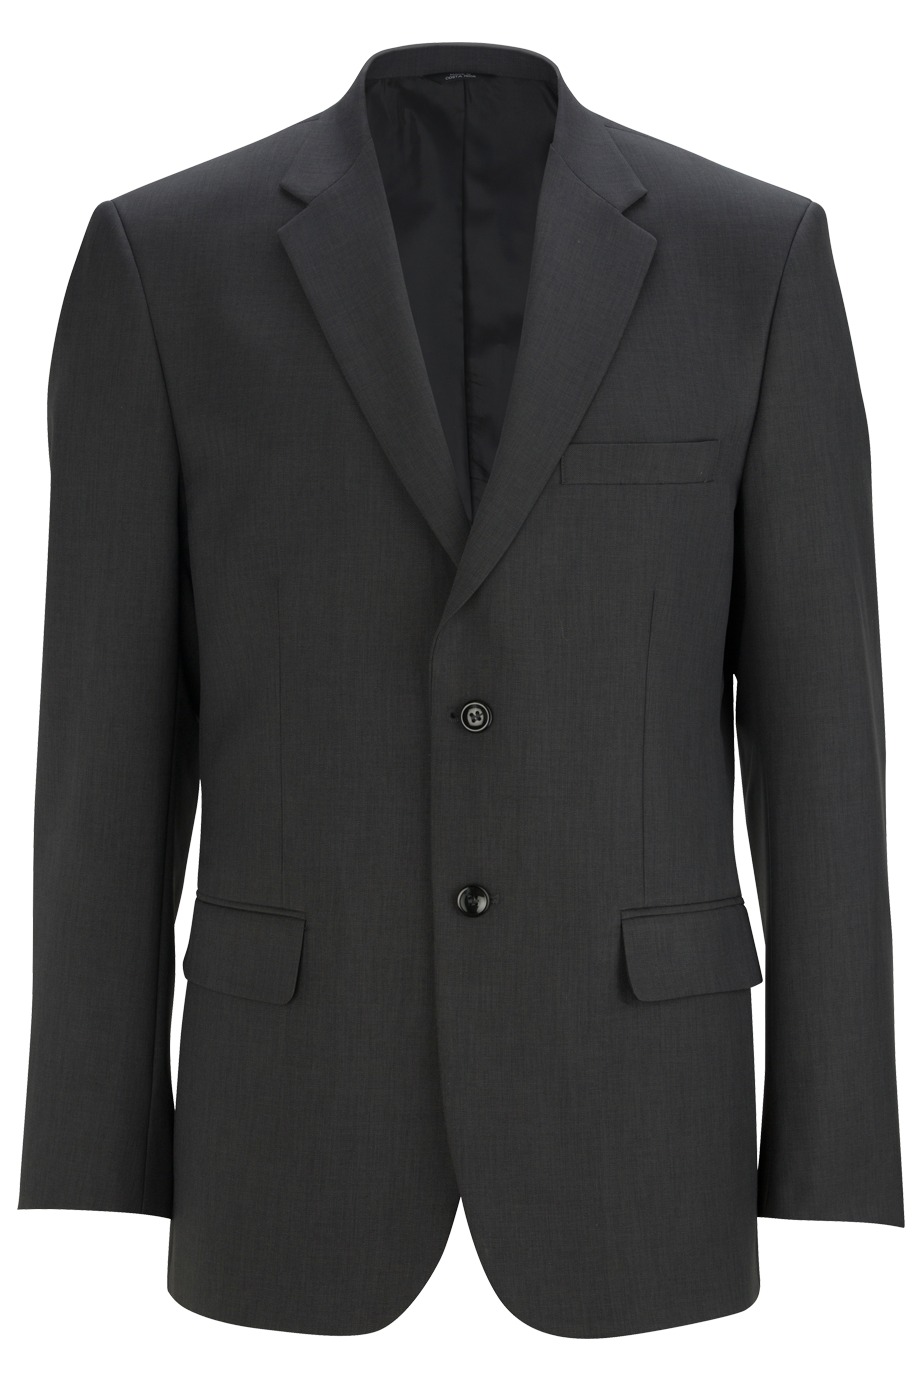 Edwards Garment 3525 - Synergy Washable Coat